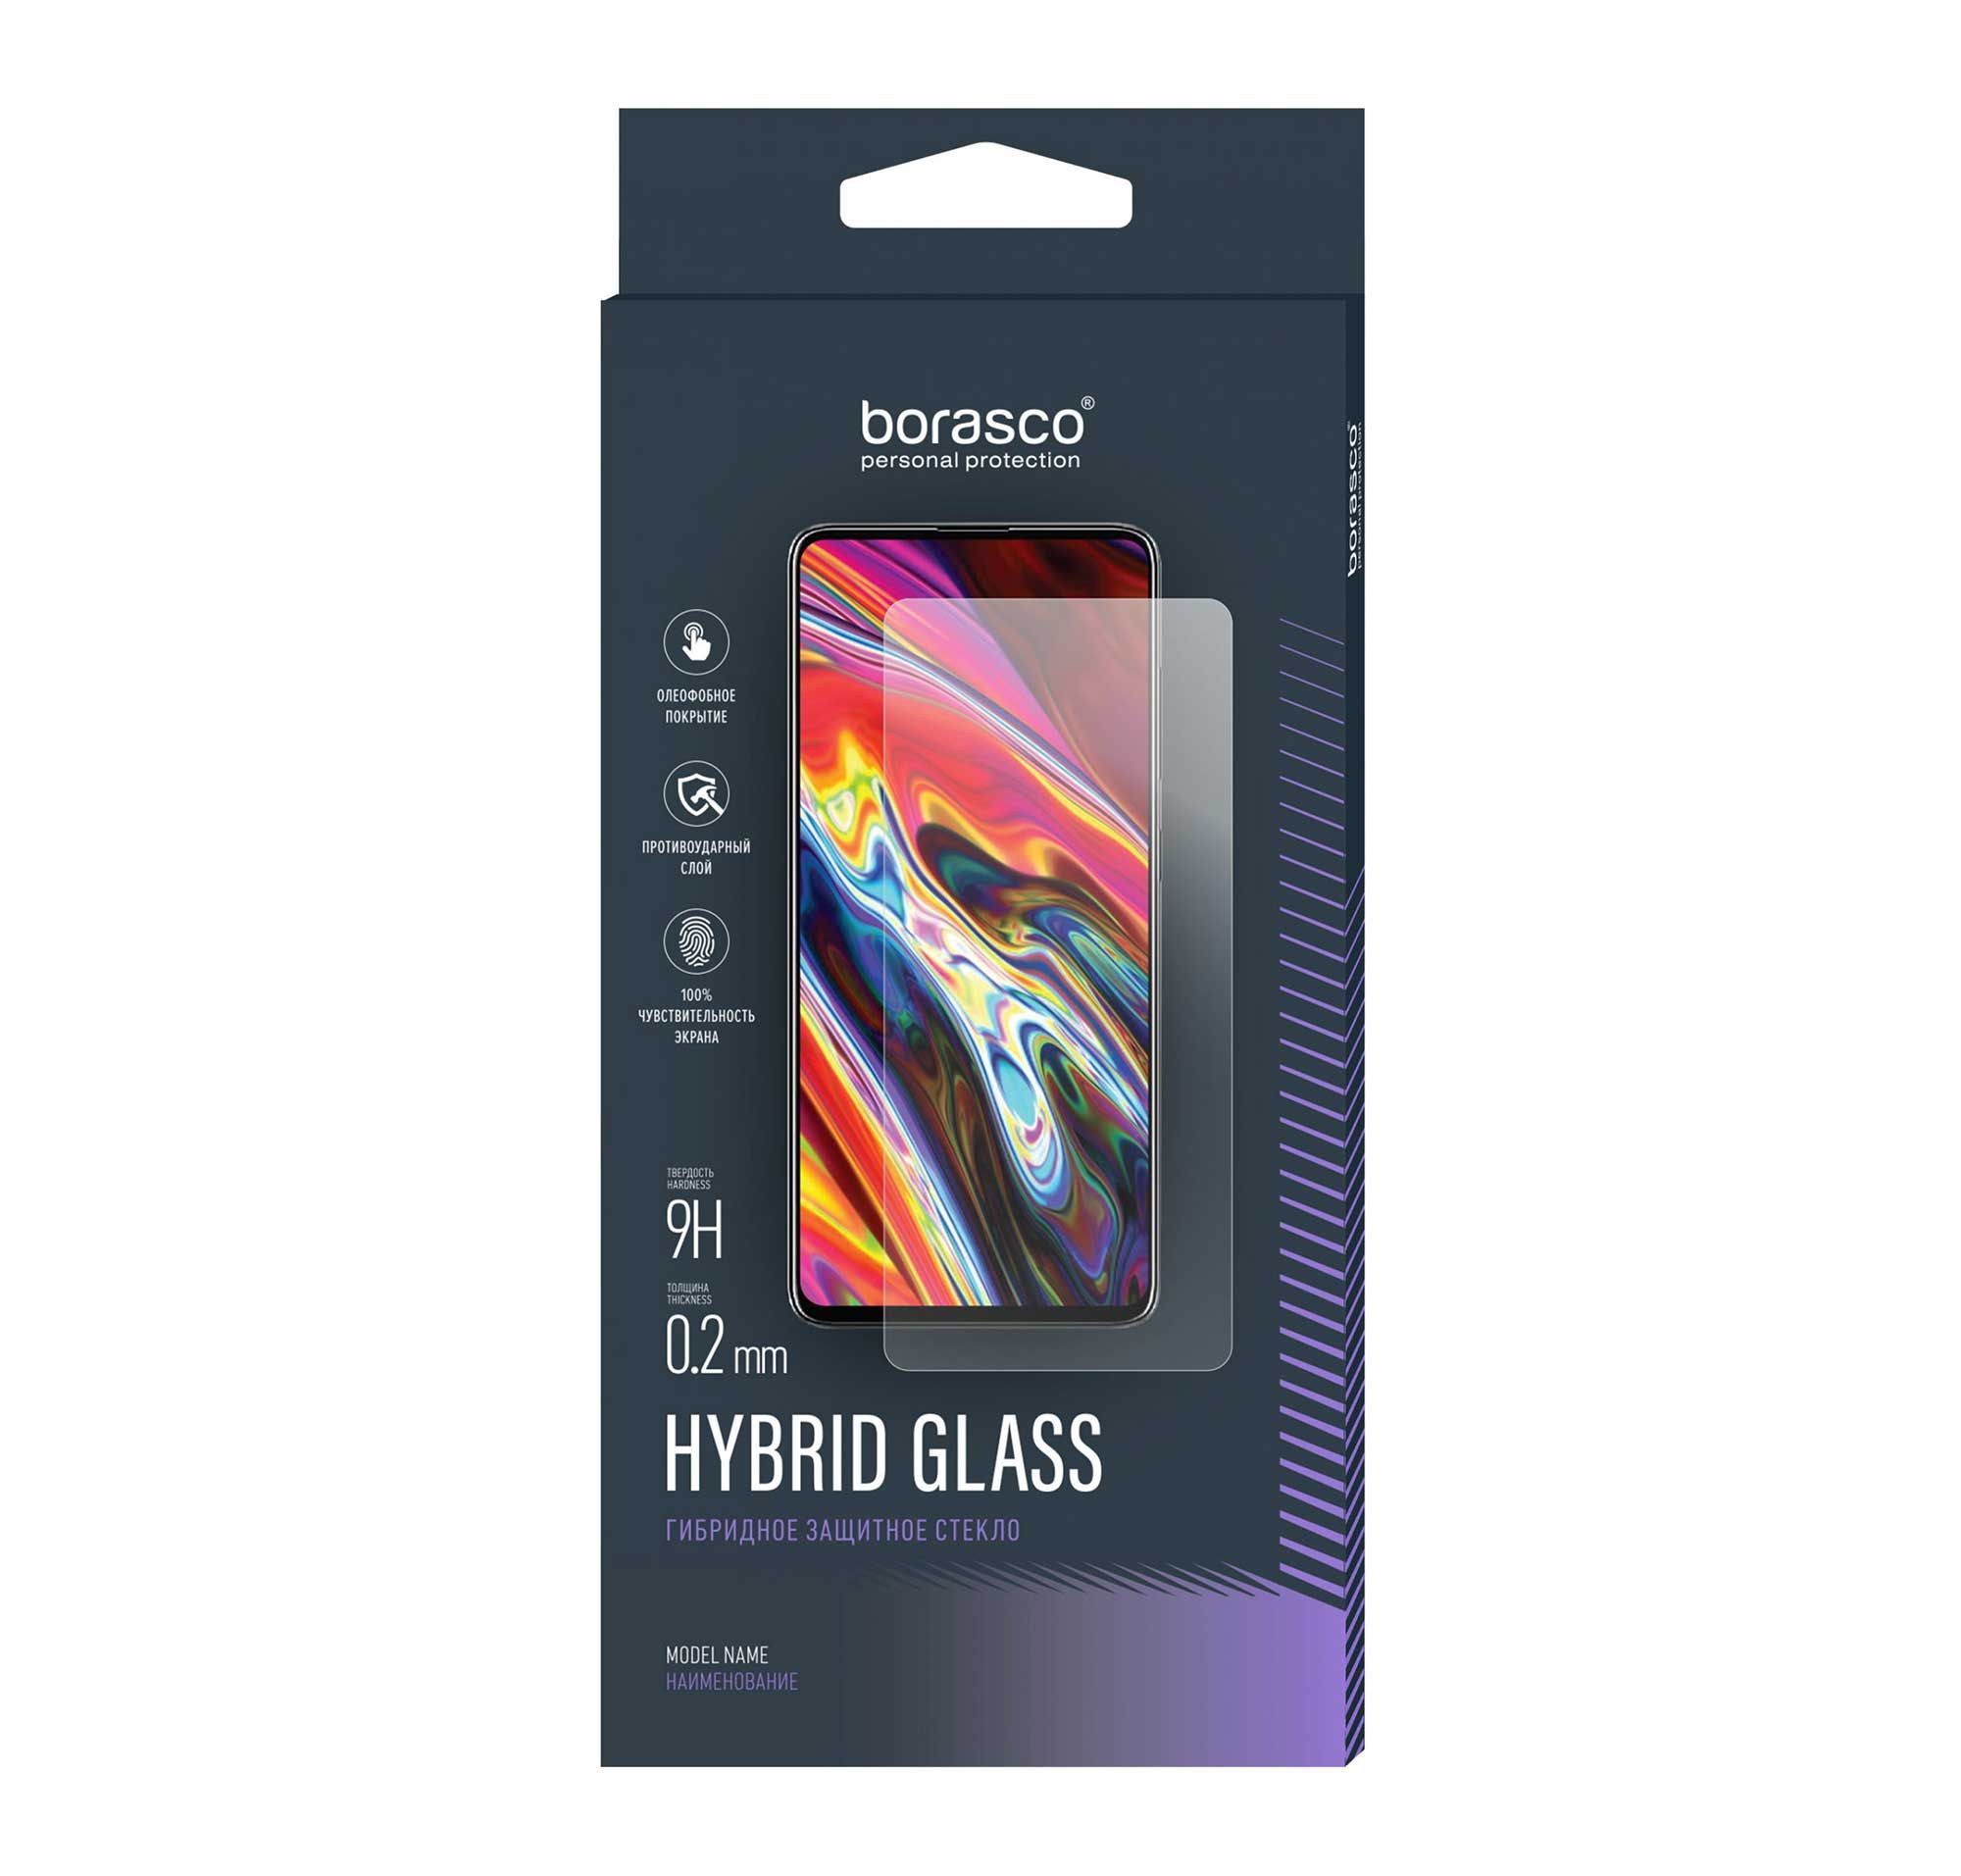 Защитное стекло Hybrid Glass для OPPO A58 4G 6 в 1 для oppo a58 стекло для oppo a58 закаленное стекло 9h защитное полное покрытие клейкая защита для экрана oppo a 58 a58 4g стекло для объектива